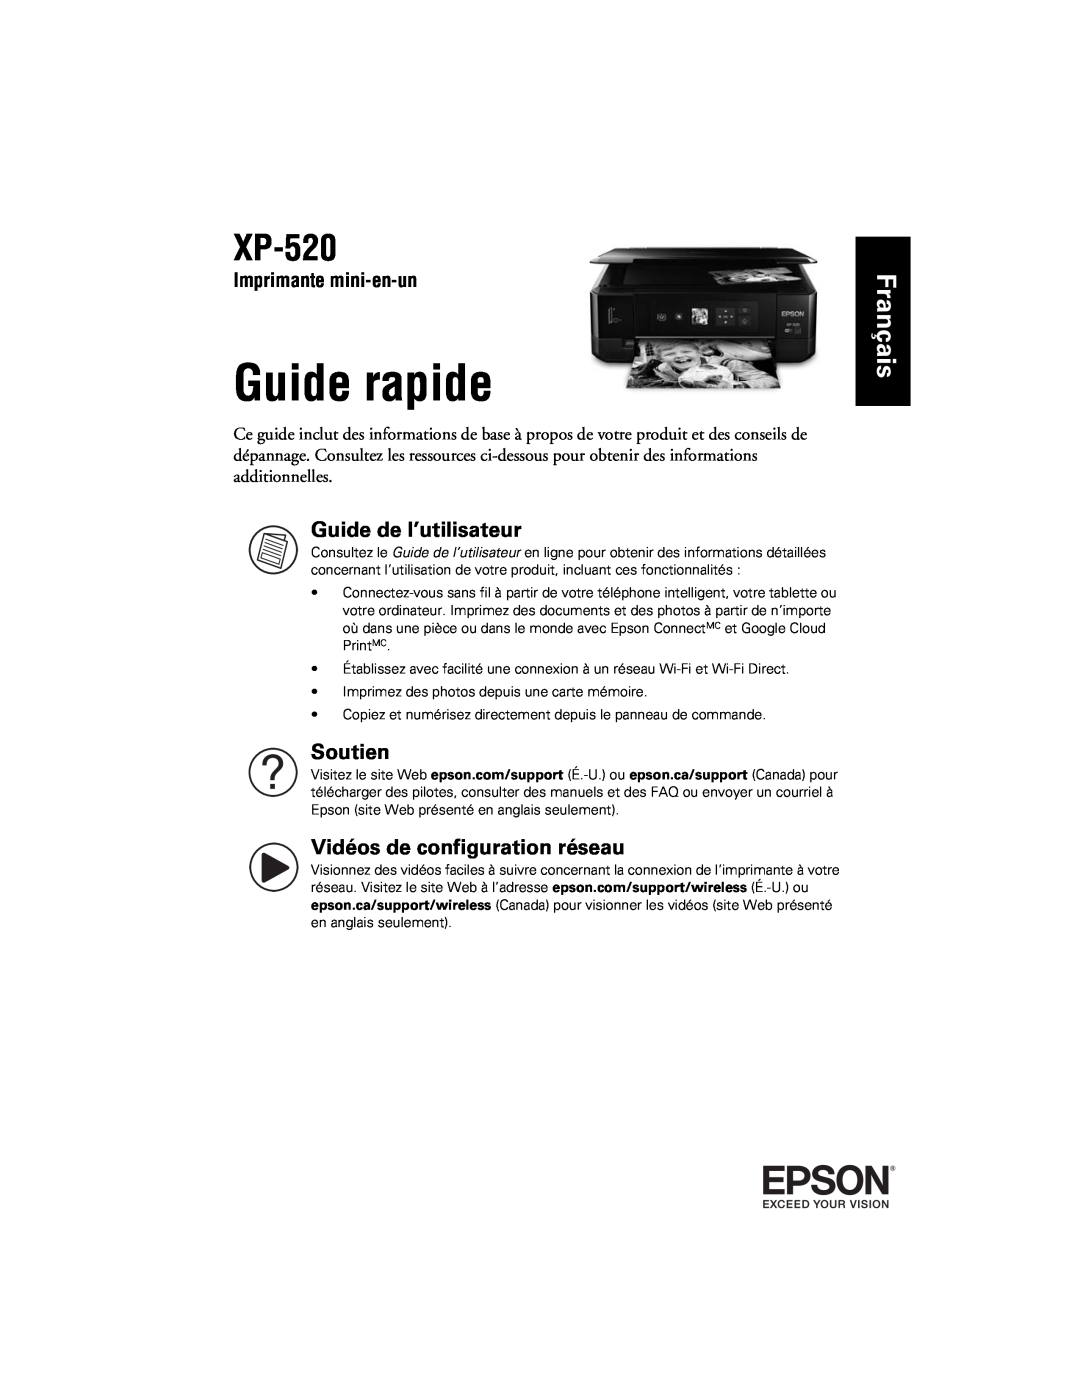 Epson XP-520 manual Guide rapide, Français, Guide de l’utilisateur, Soutien, Vidéos de configuration réseau 